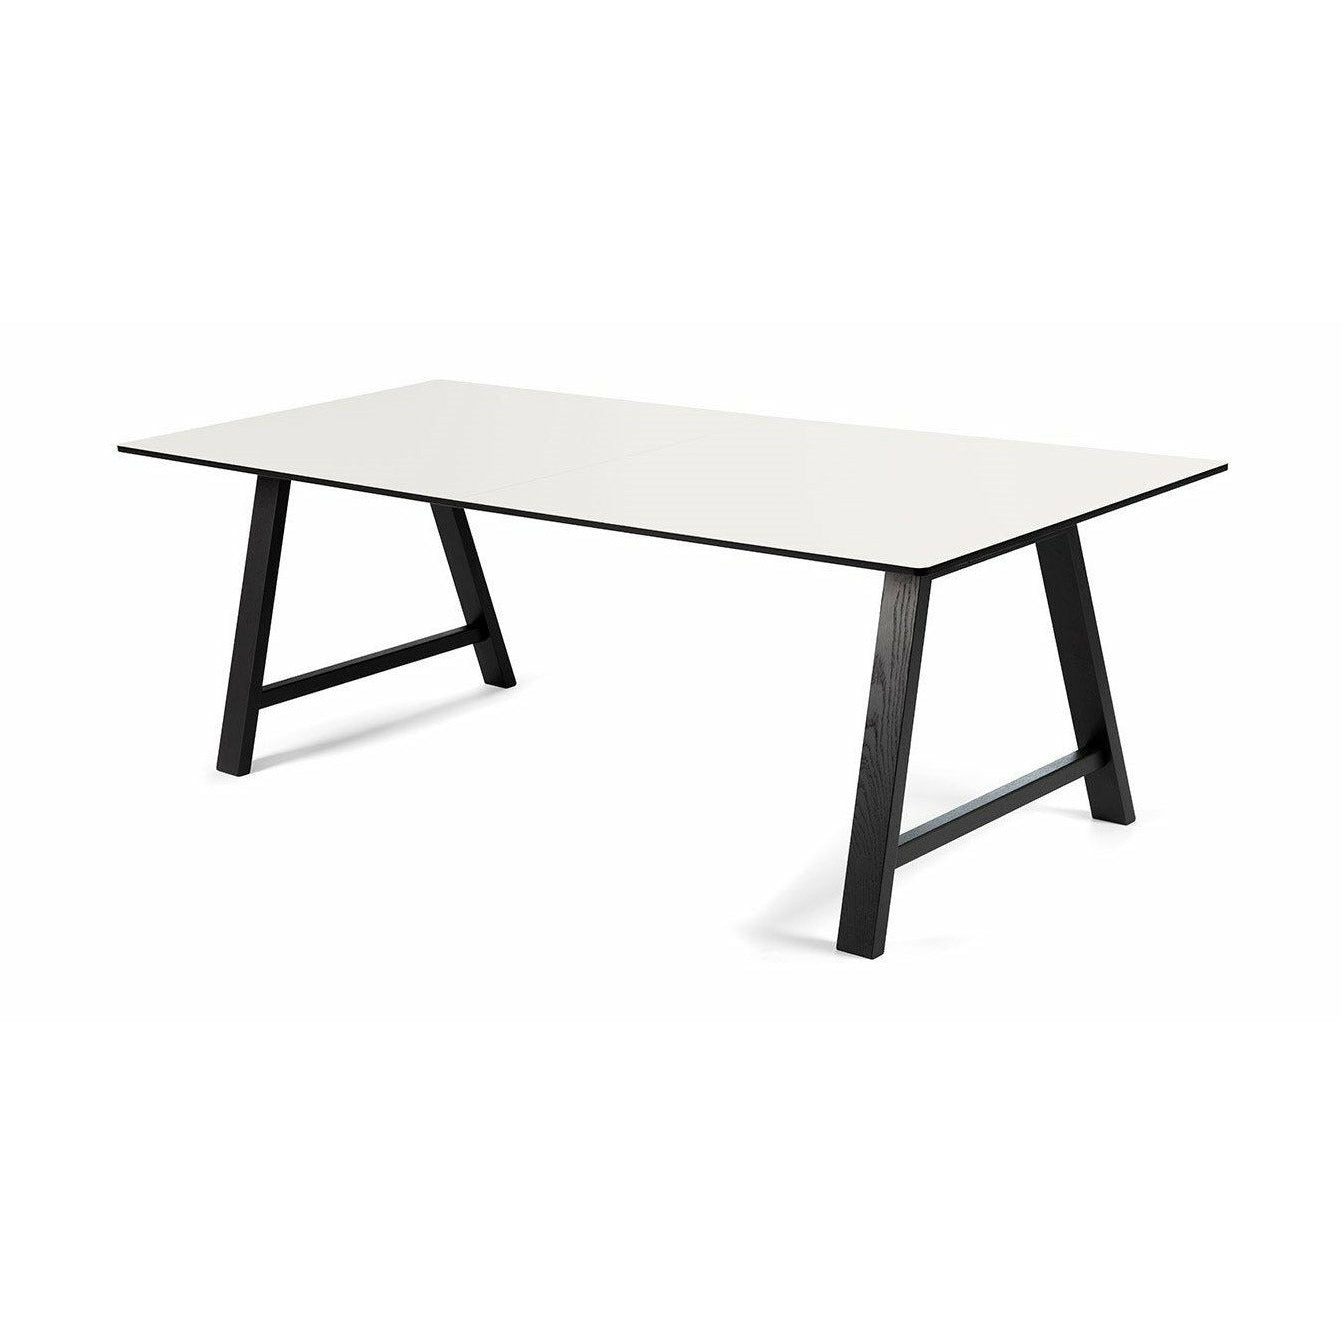 Andersen Furniture T1 udtræksbord, hvid laminat, sort stel, 160 cm